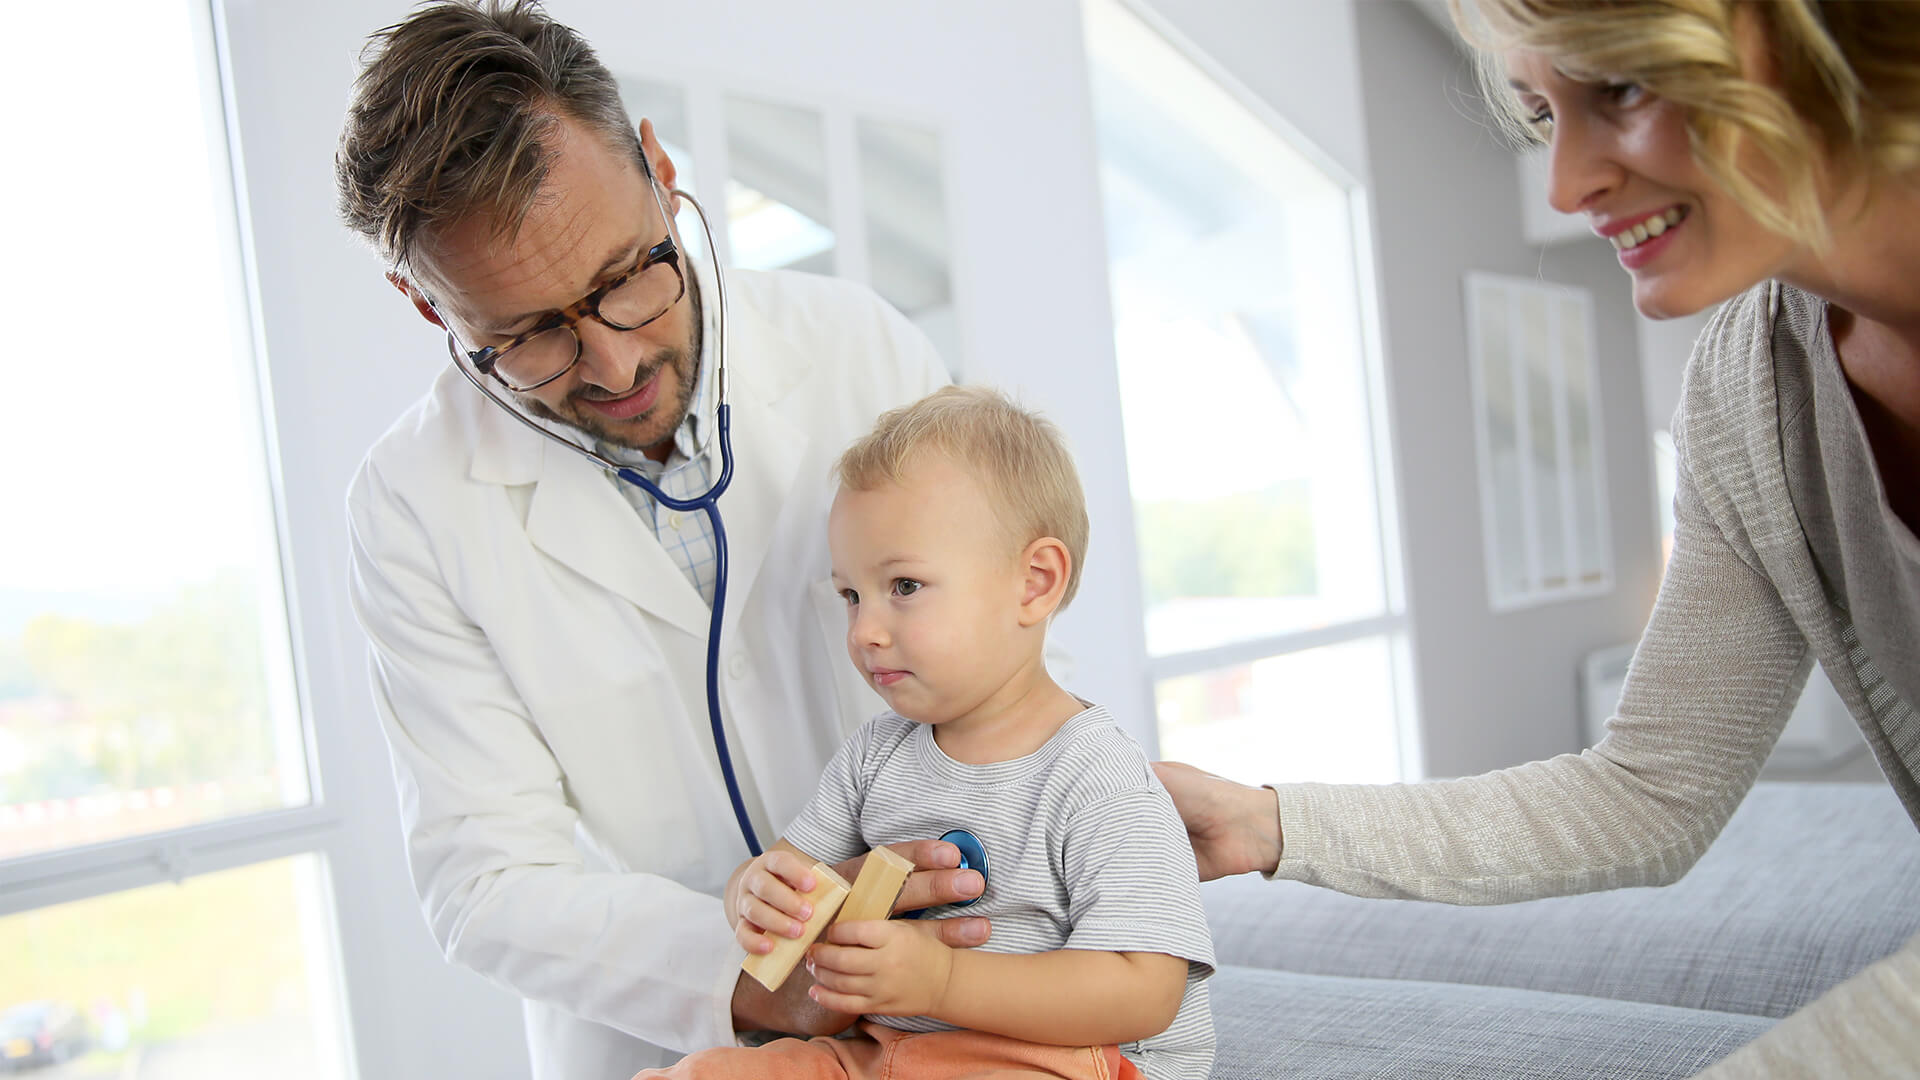 Oprogramowanie dla pediatry internisty neurologa - lekarz pediatra badający dziecko